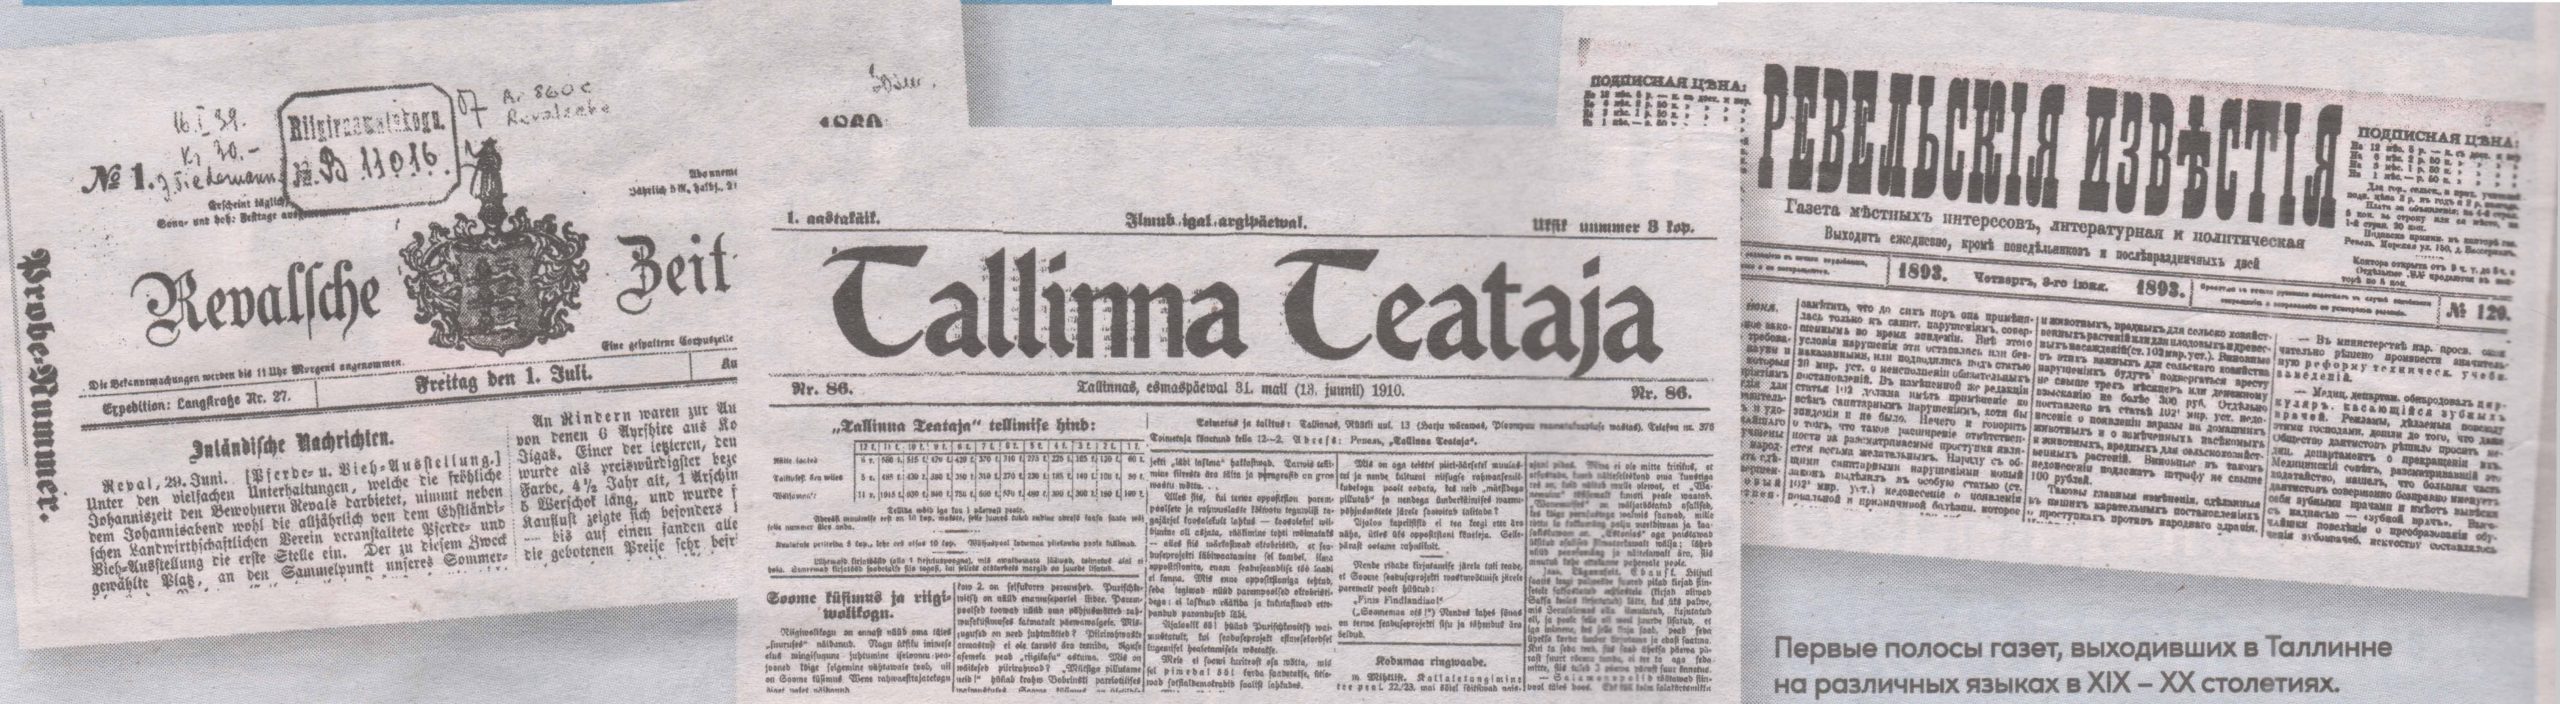 Первые полосы газет, выходивших в Таллинне на различных языках в XIX - XX столетиях.